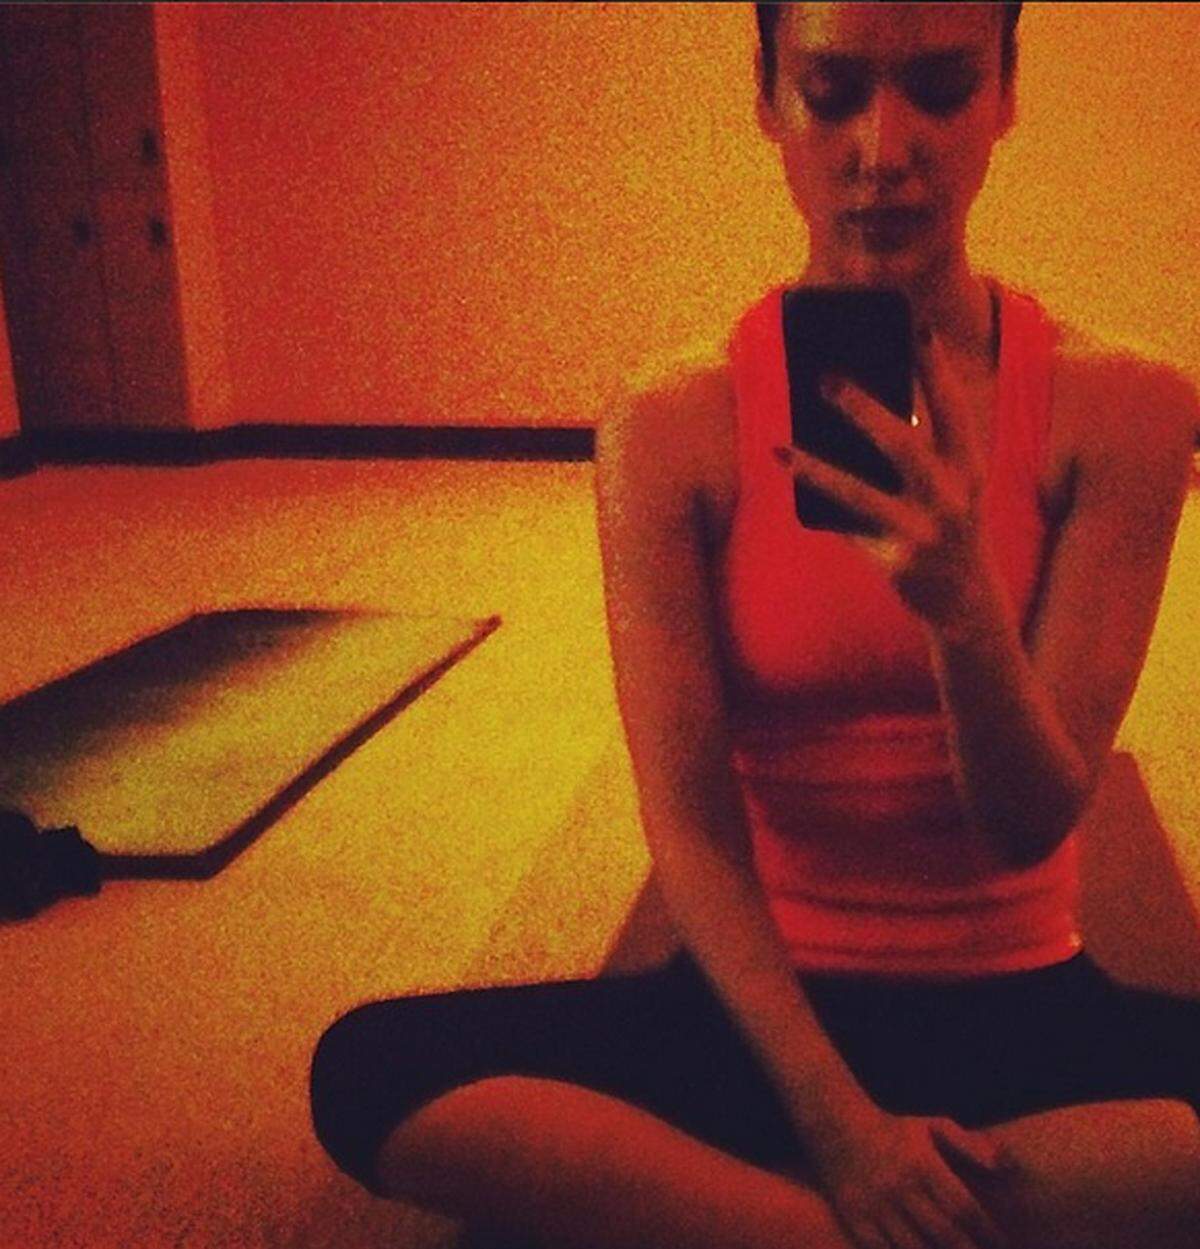 Schauspielerin Jessica Alba schwitzt bei Hot Yoga.